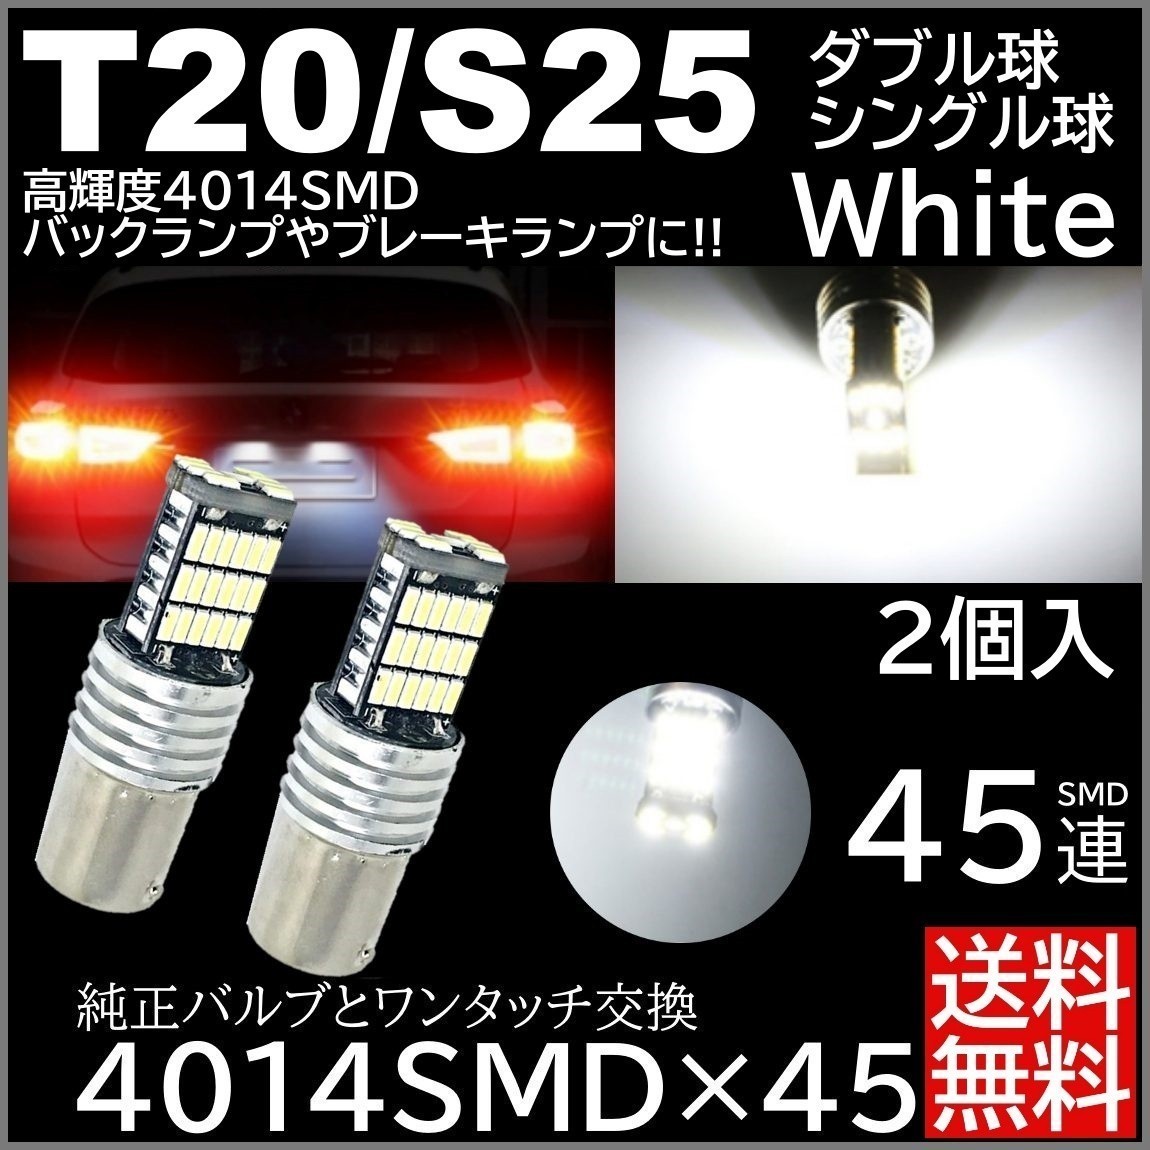 ◆送料無料◆ 2個 ホワイト 高輝度 12V 45連 LED T20 S25 ダブル球 180度 バックランプ ブレーキランプ テールランプ キャンセラー内蔵_画像1